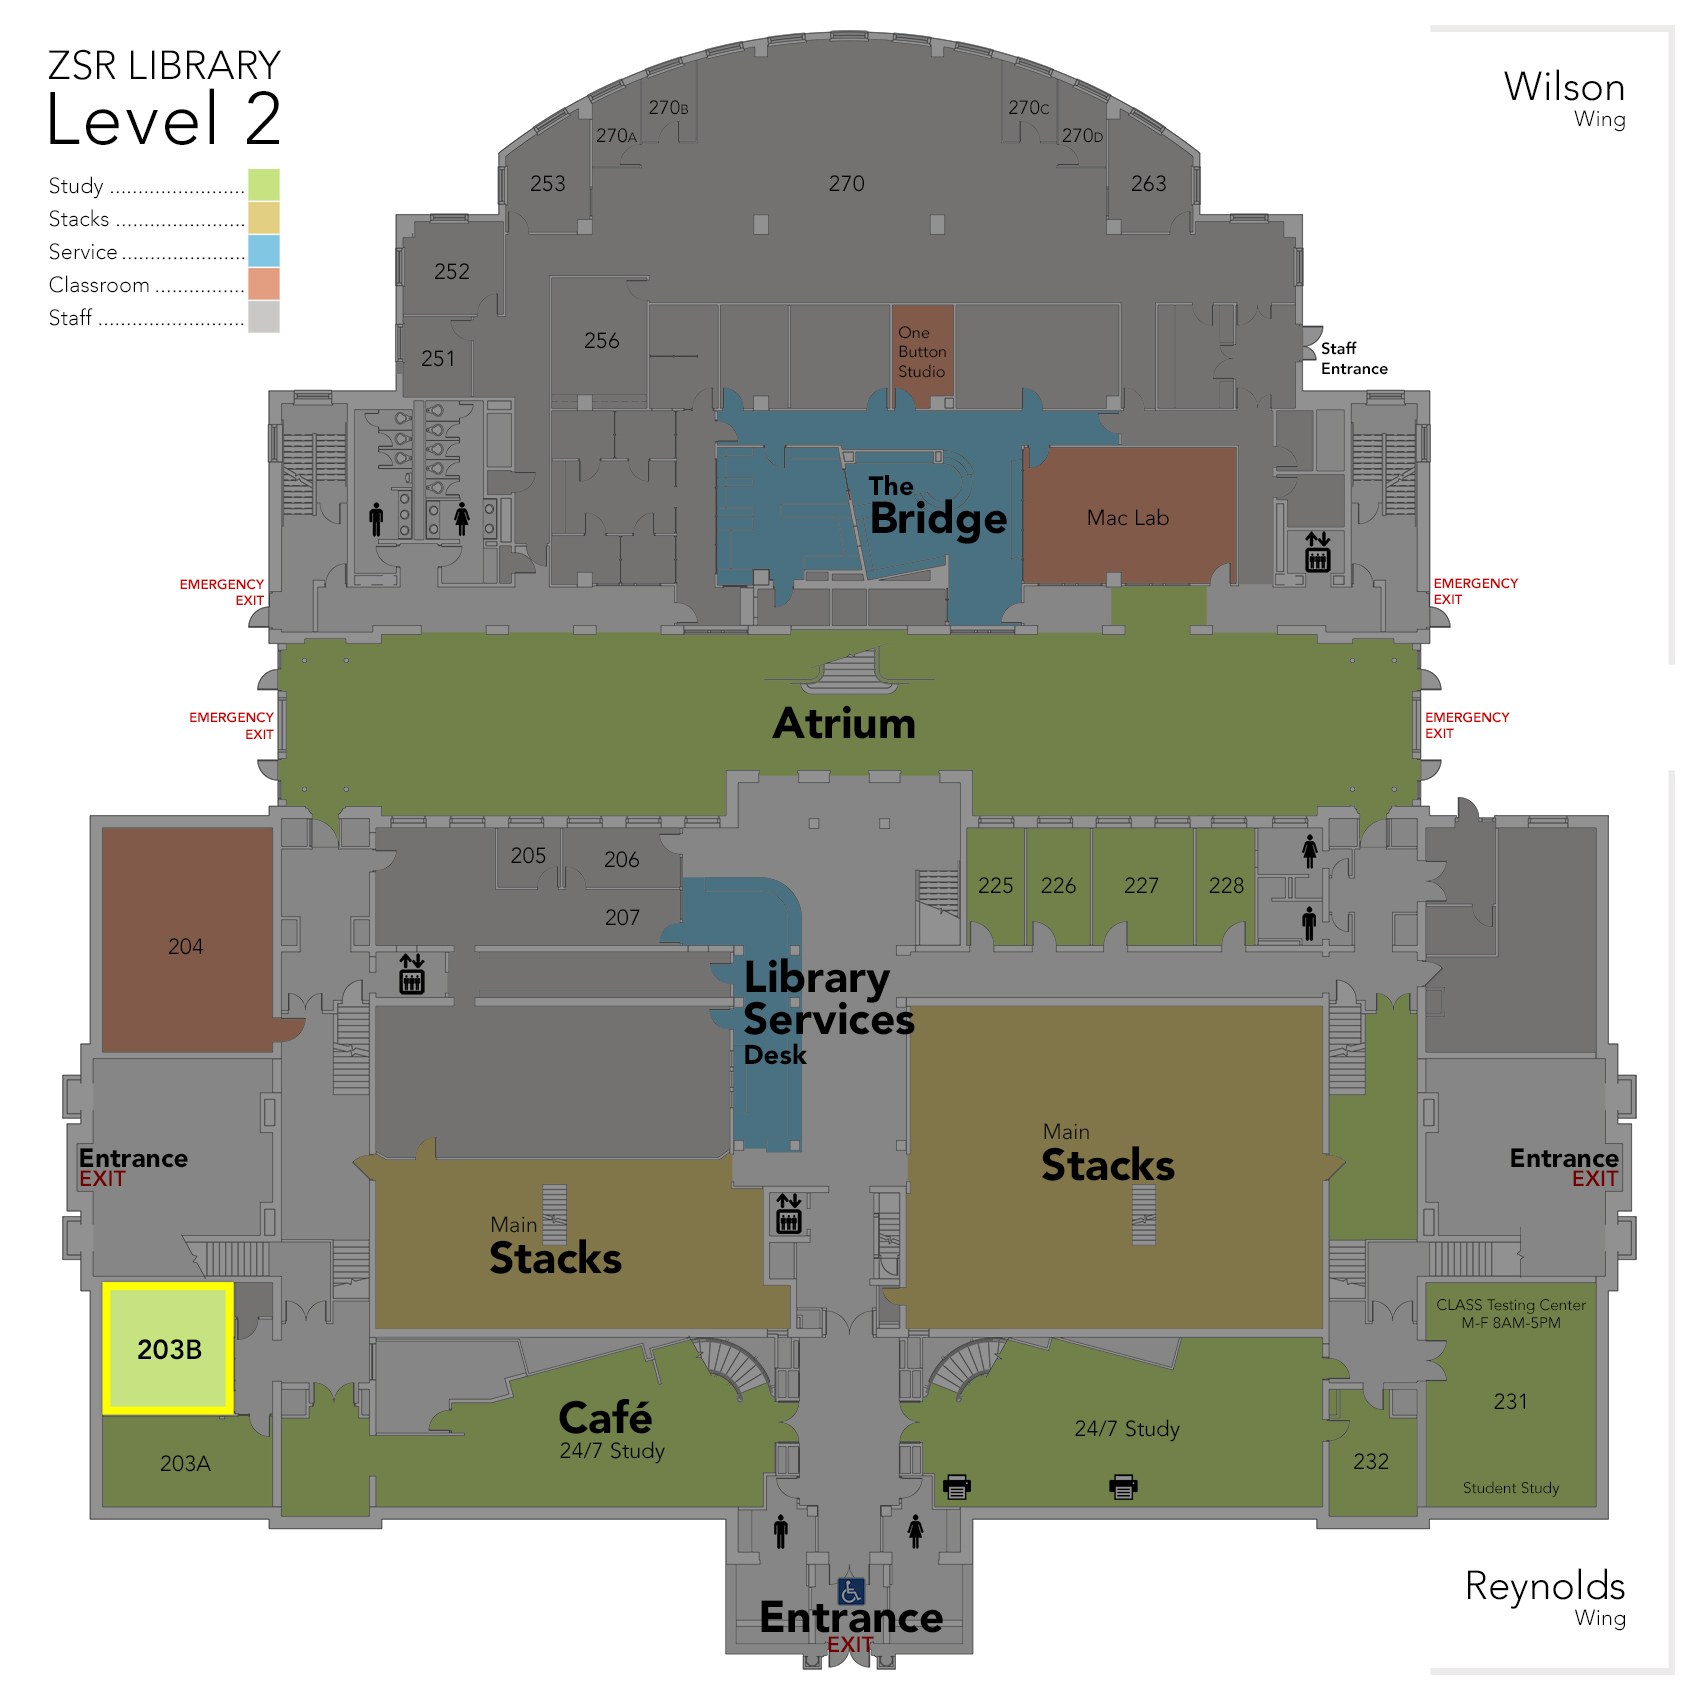 Level 2 Study Room 203B map